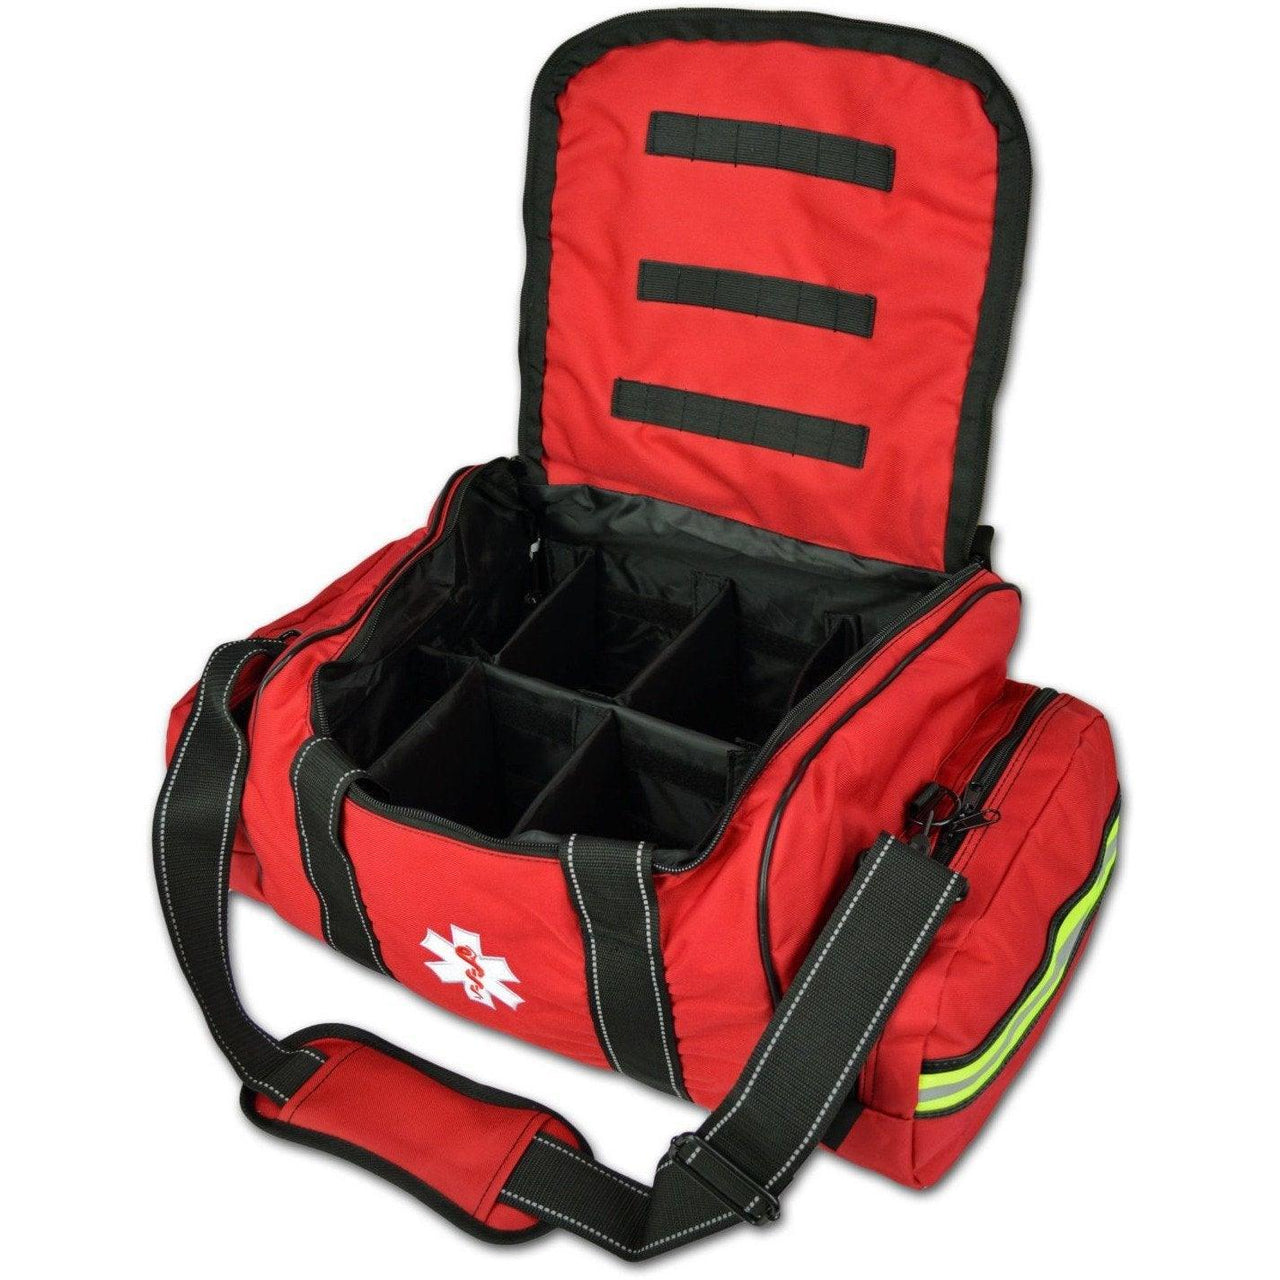 MEDIC-X EMT First Responder Bag - Large - Vendor